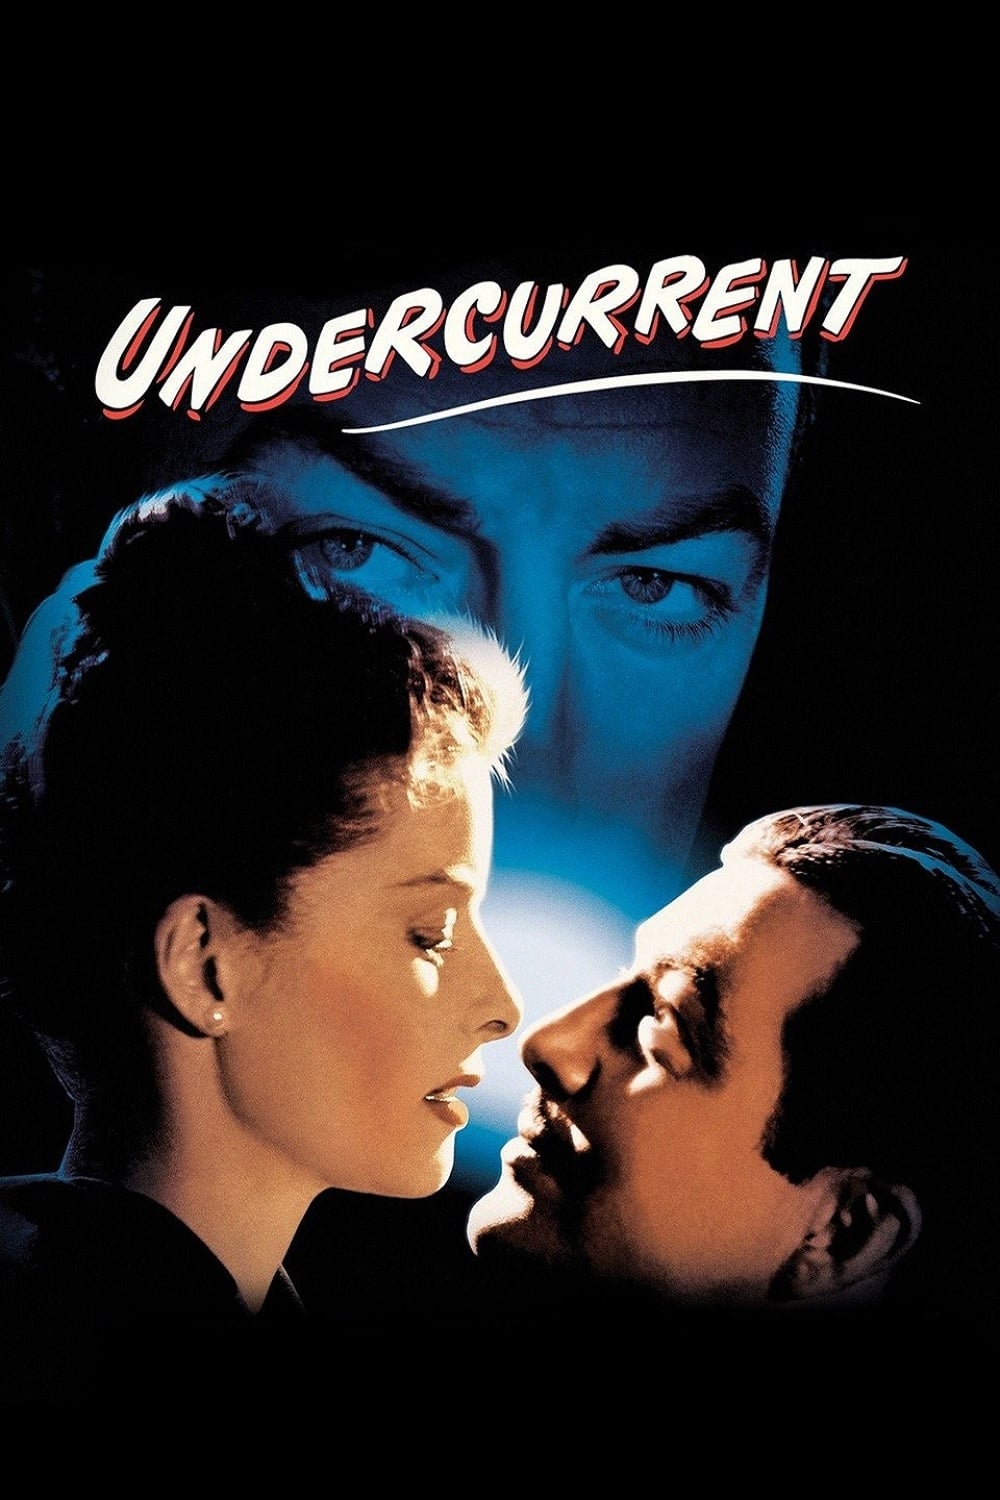 Undercurrent (1946)